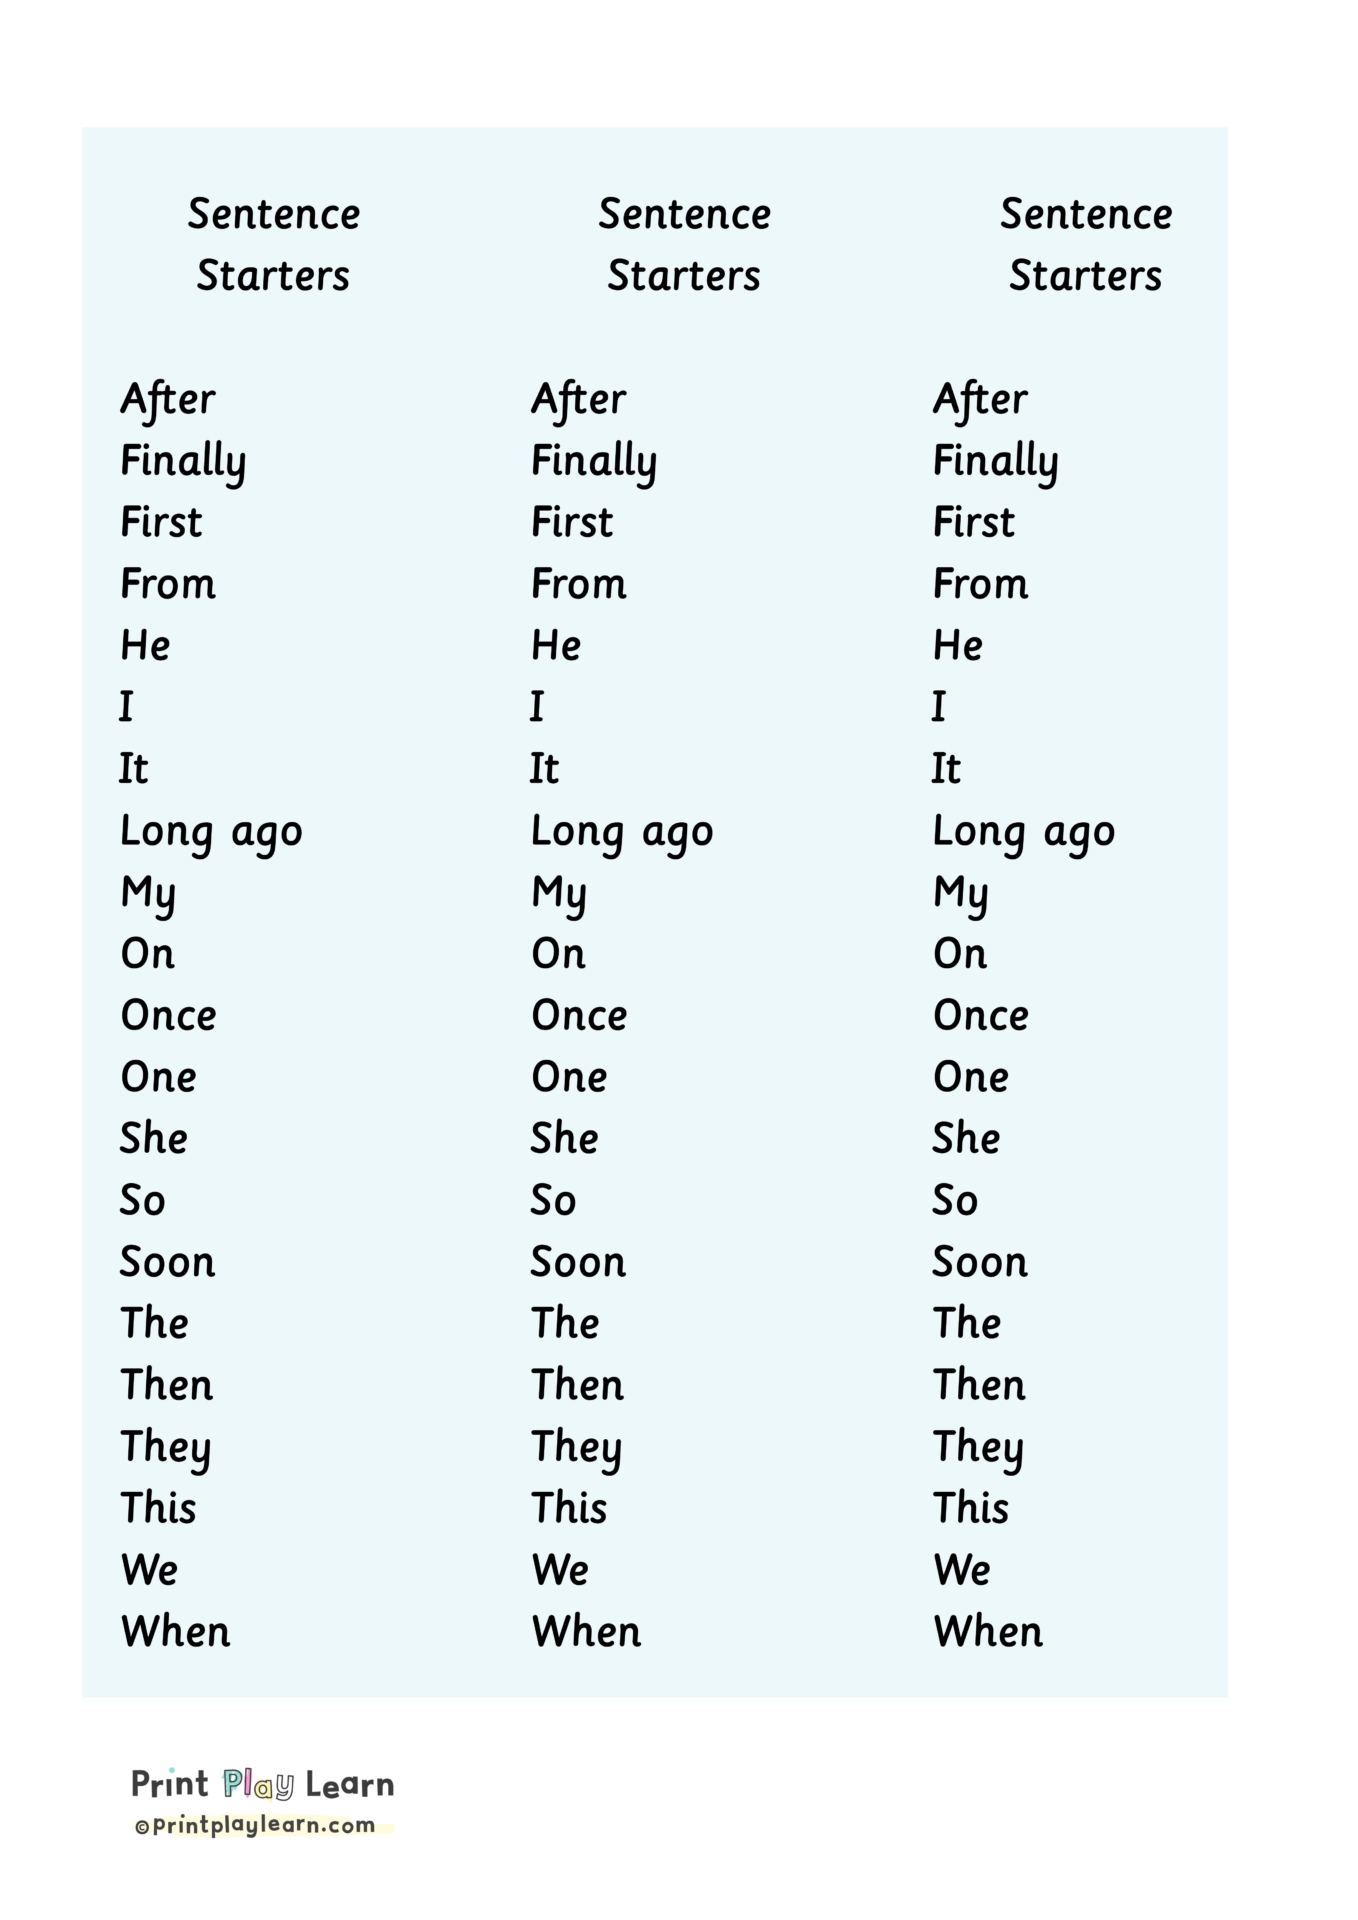 Sentence Starter Worksheet